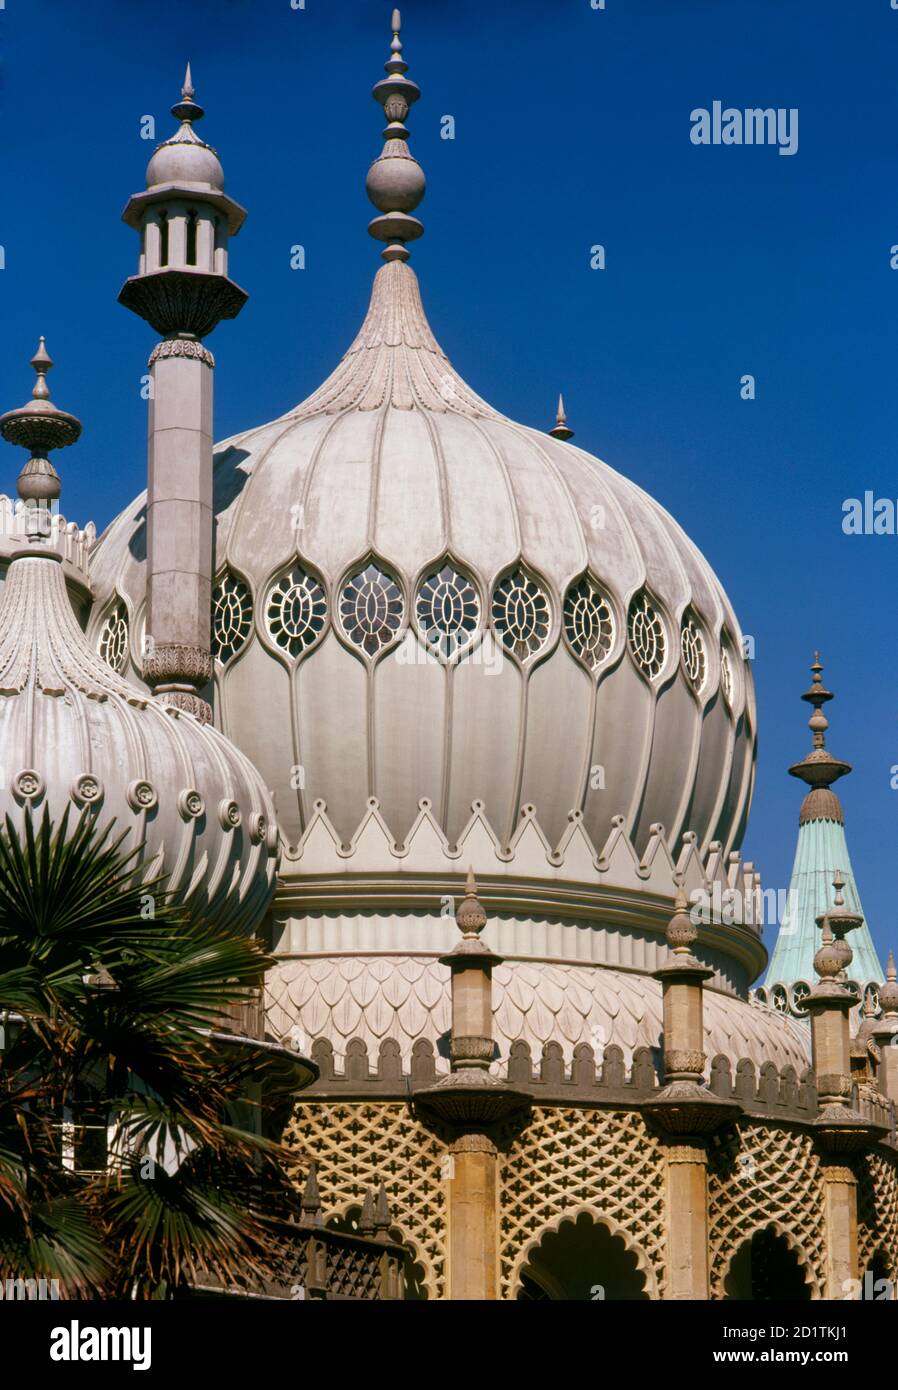 ROYAL PAVILION, Brighton, East Sussex. Vista esterna del Royal Pavilion di Brighton che mostra le cupole. Fotografato da Eric de Mare tra il 1960 e il 1969. Foto Stock